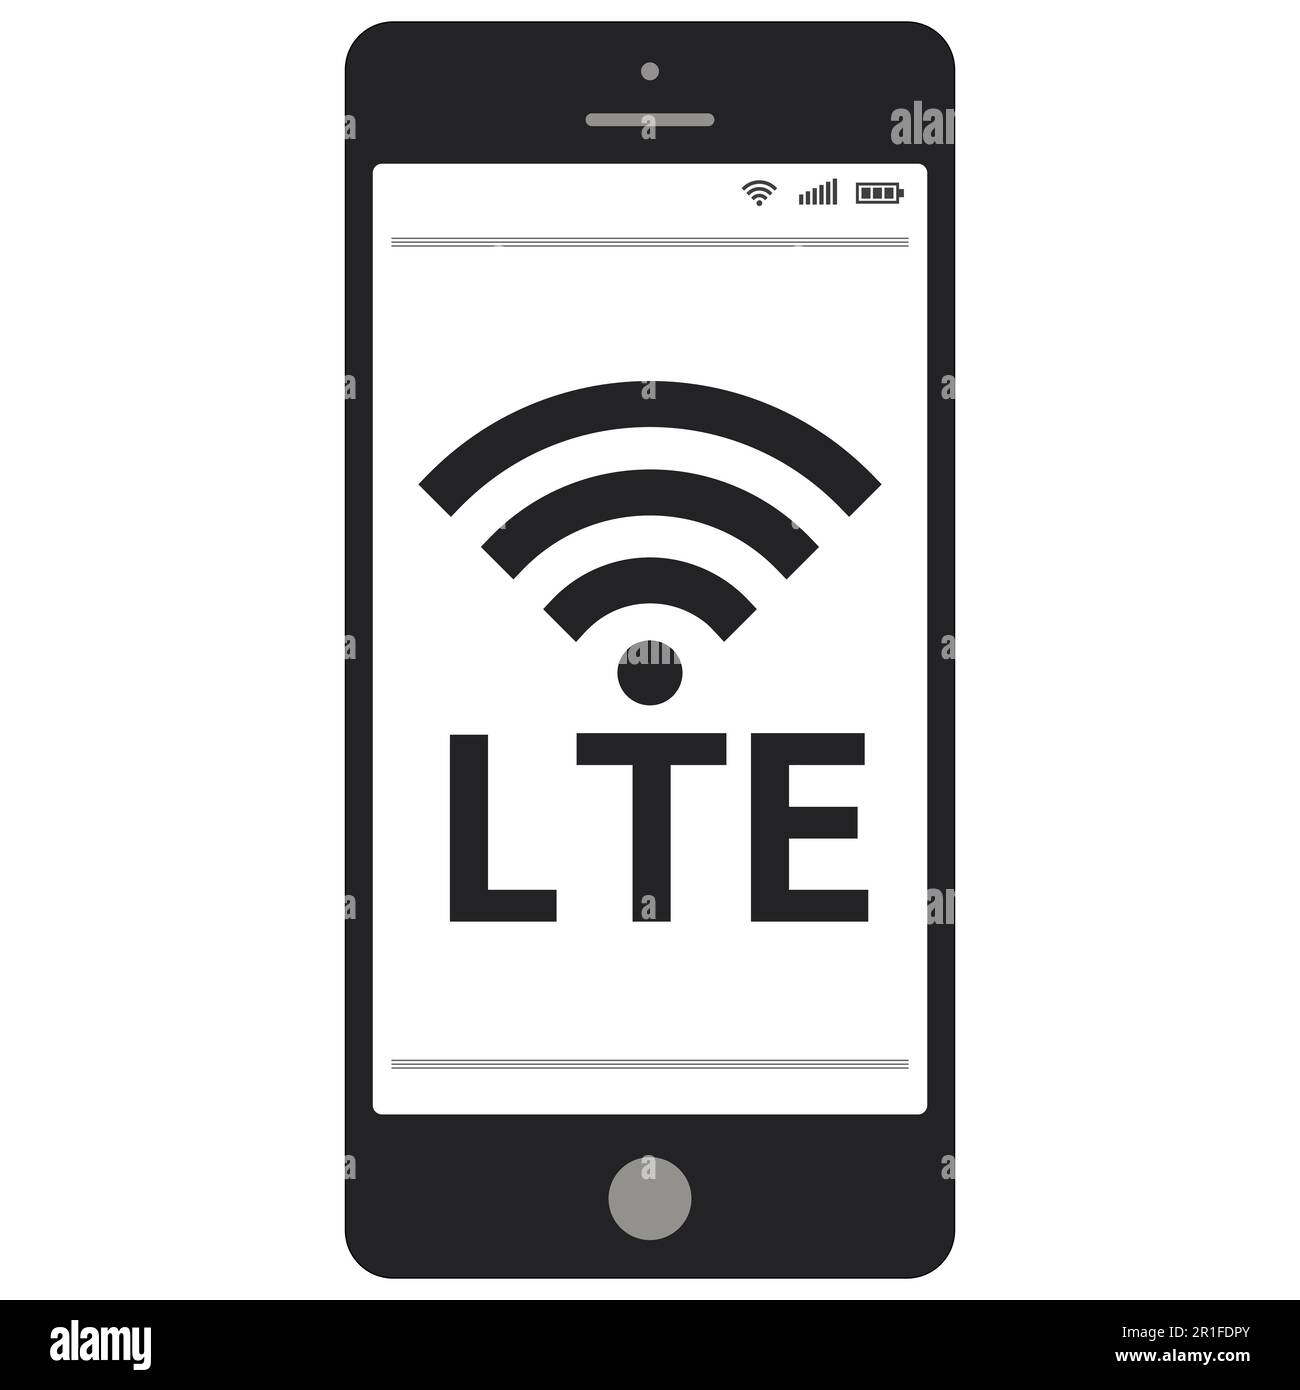 lte-Signatursymbol mit Vektorsymbol-Technologie des Smartphones für die mobile 4G-LTE-Kommunikation Stock Vektor